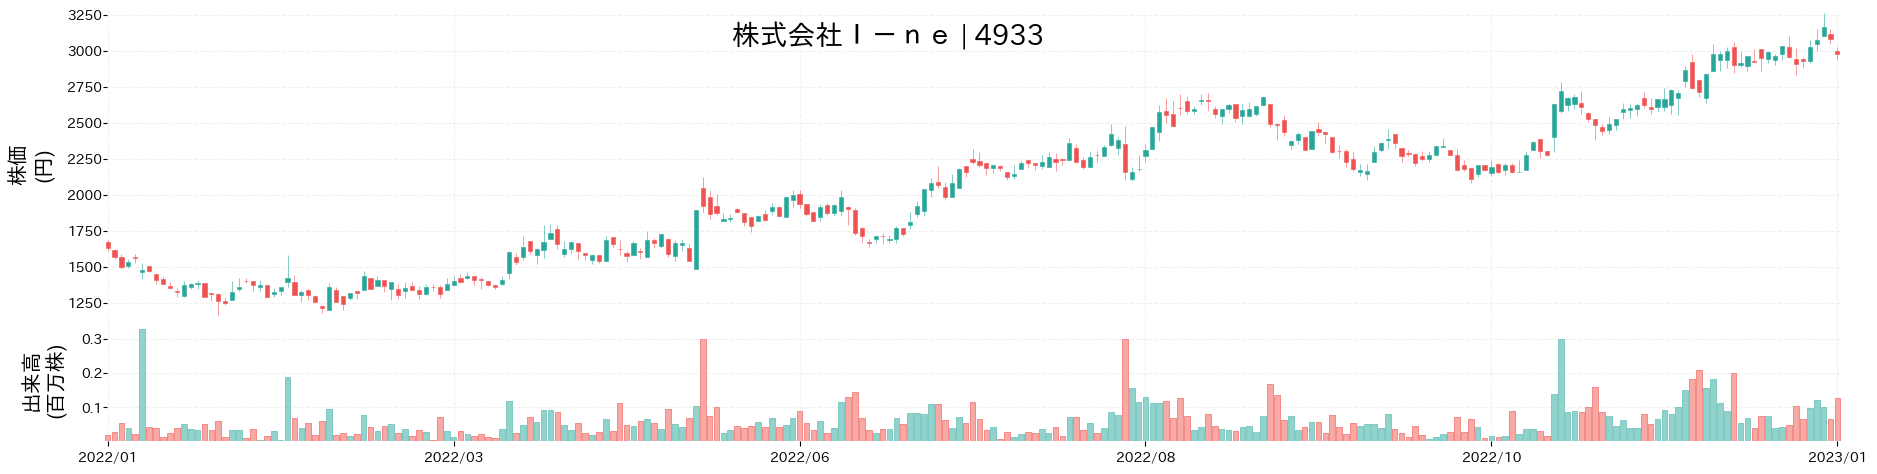 I-neの株価推移(2022)